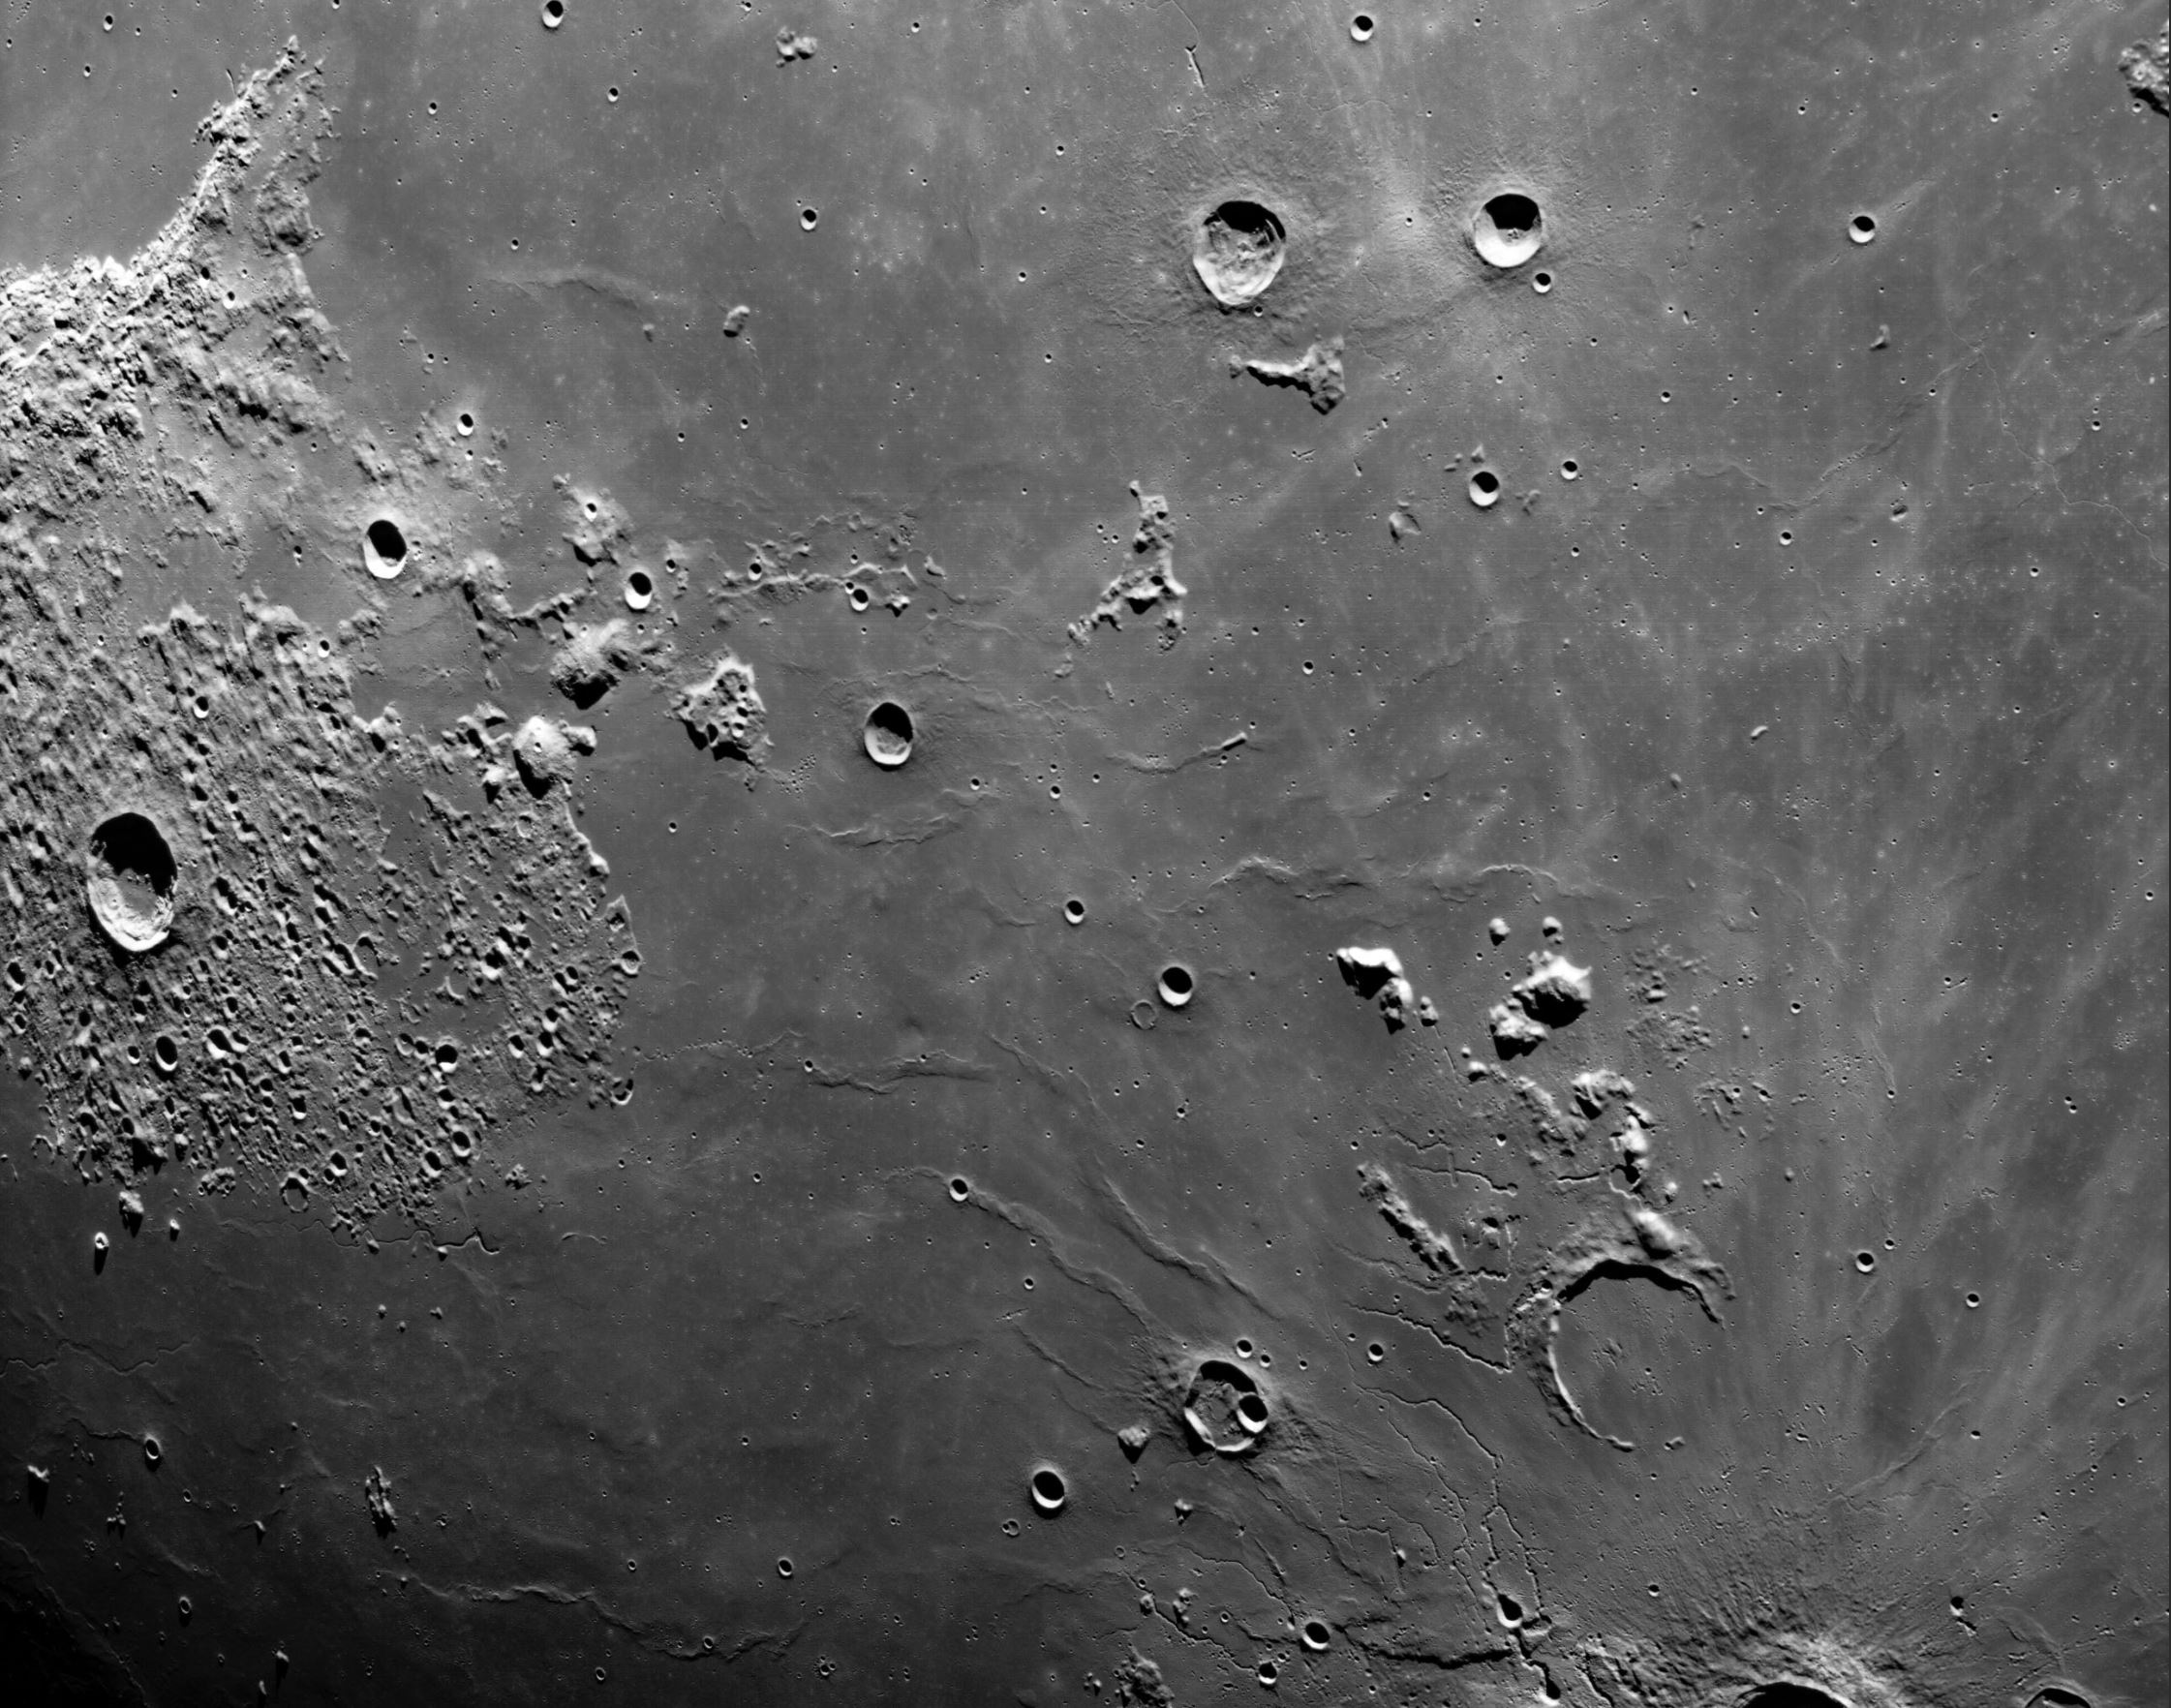 Захватывающая фотография, показывающая лунную поверхность. Изображение предоставлено: НАСА/Артемида I, Орион.